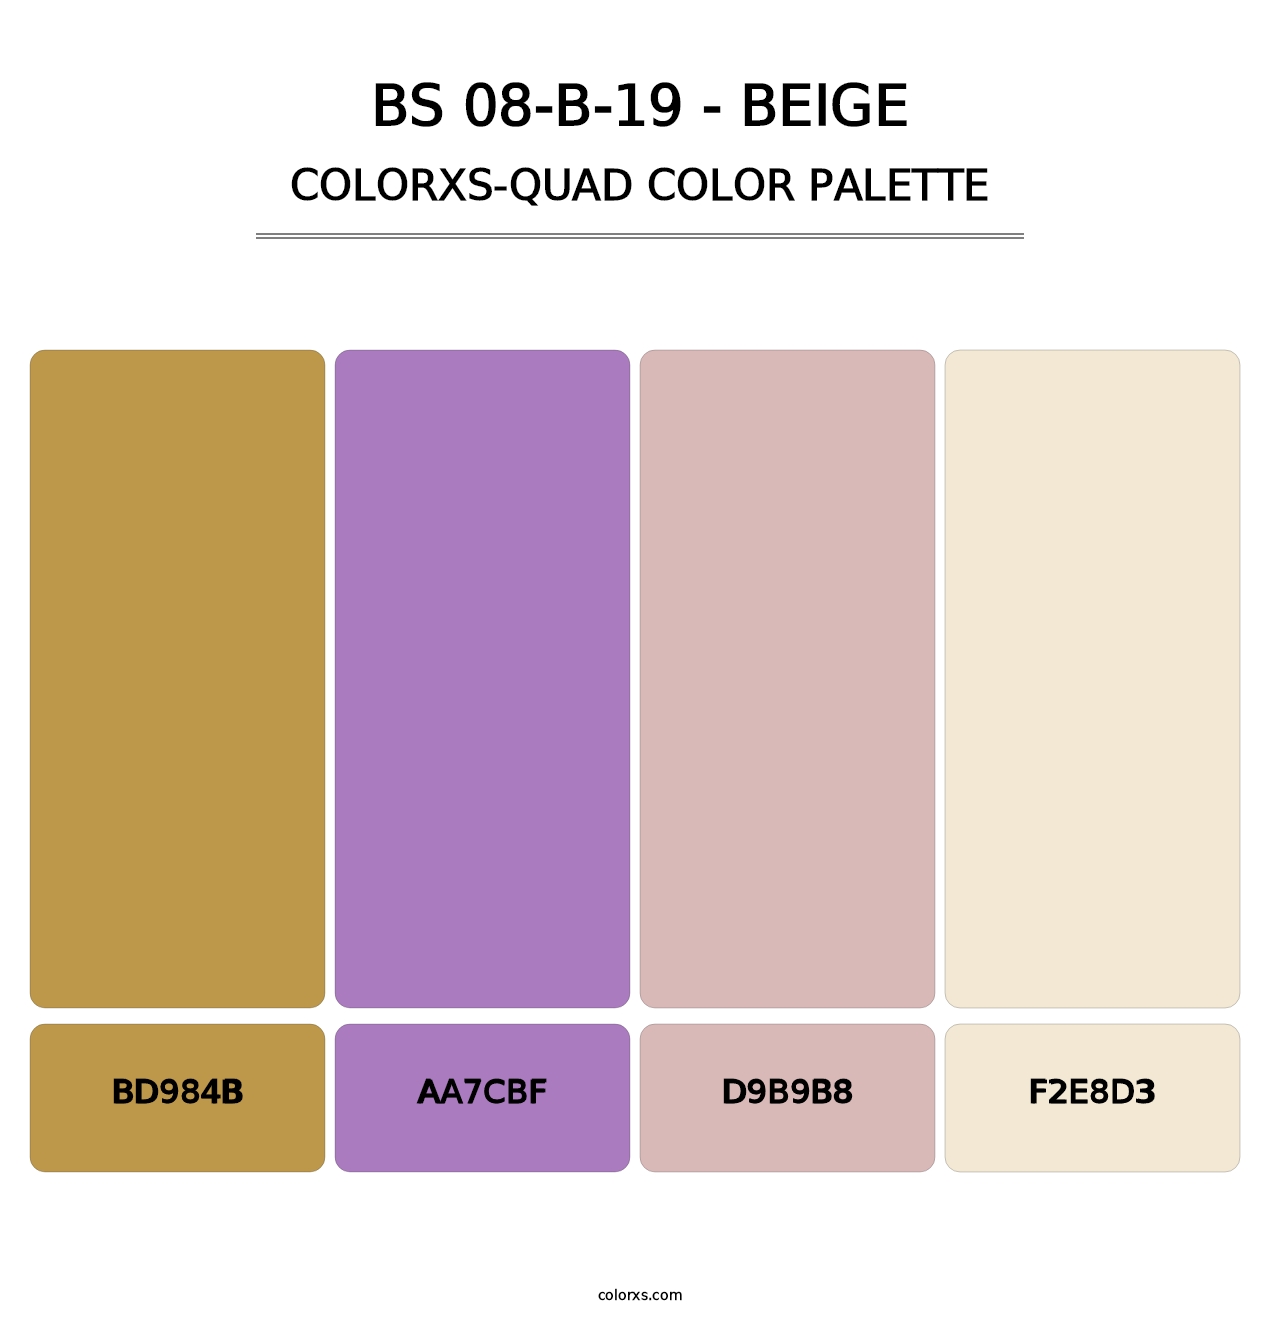 BS 08-B-19 - Beige - Colorxs Quad Palette